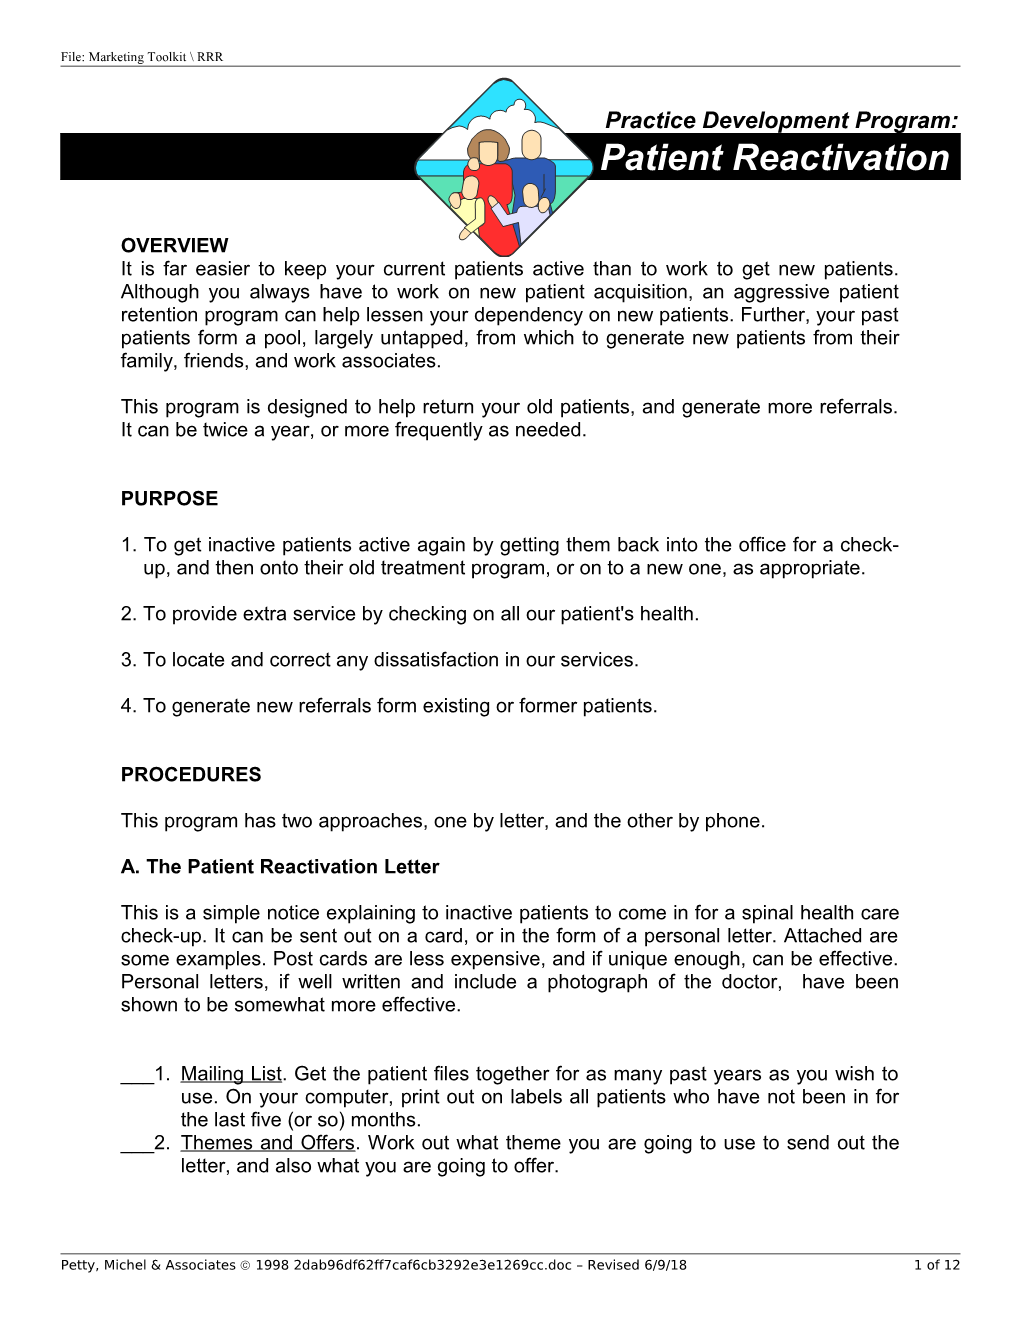 Patient Reactivation Program